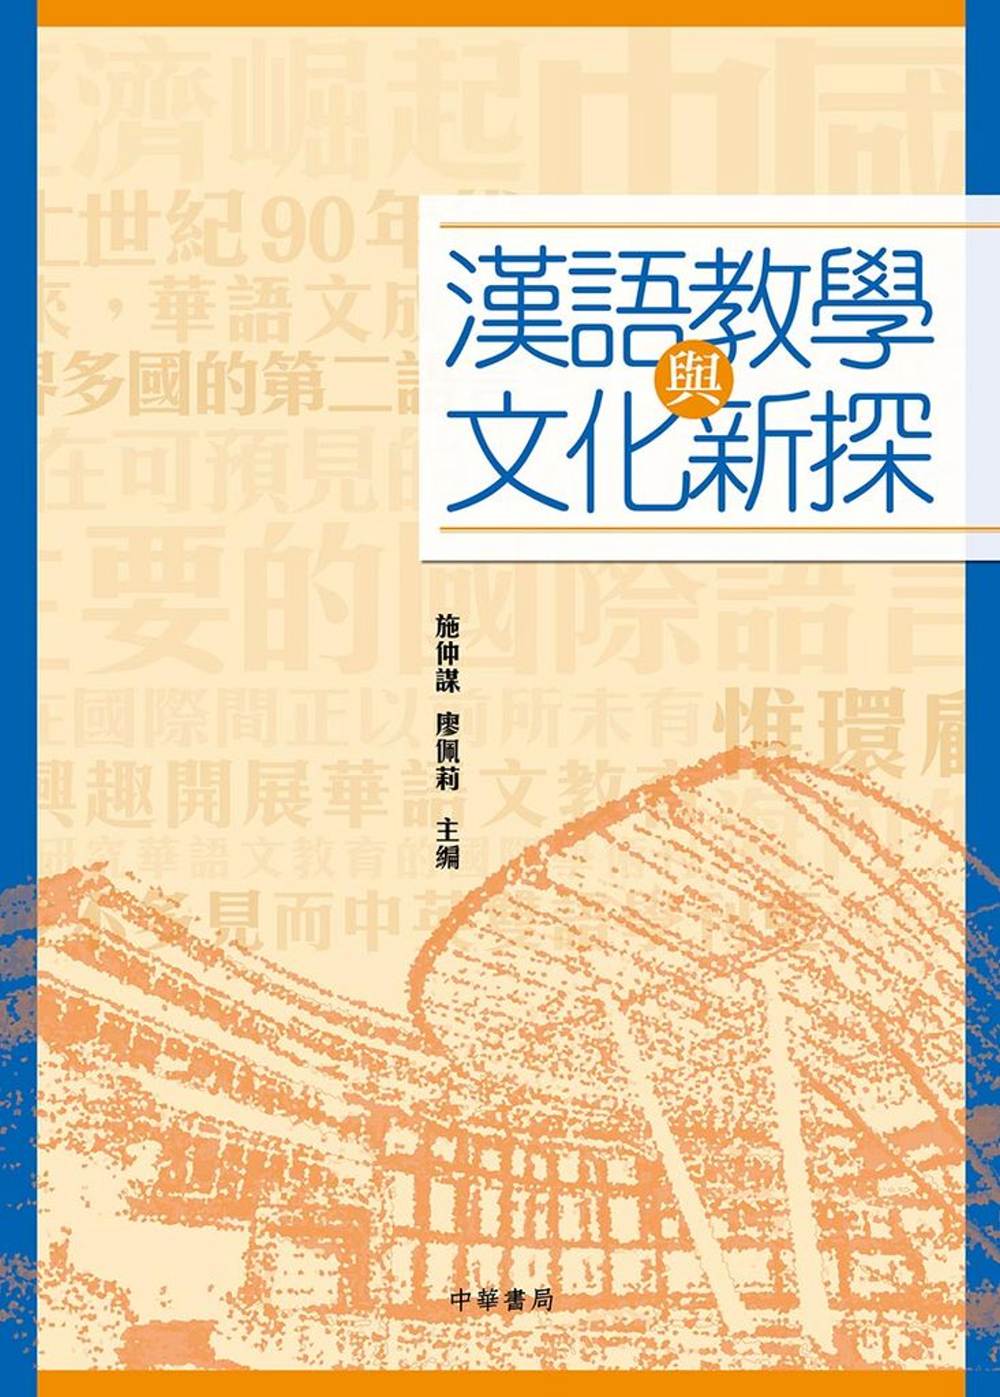 漢語教學與文化新探